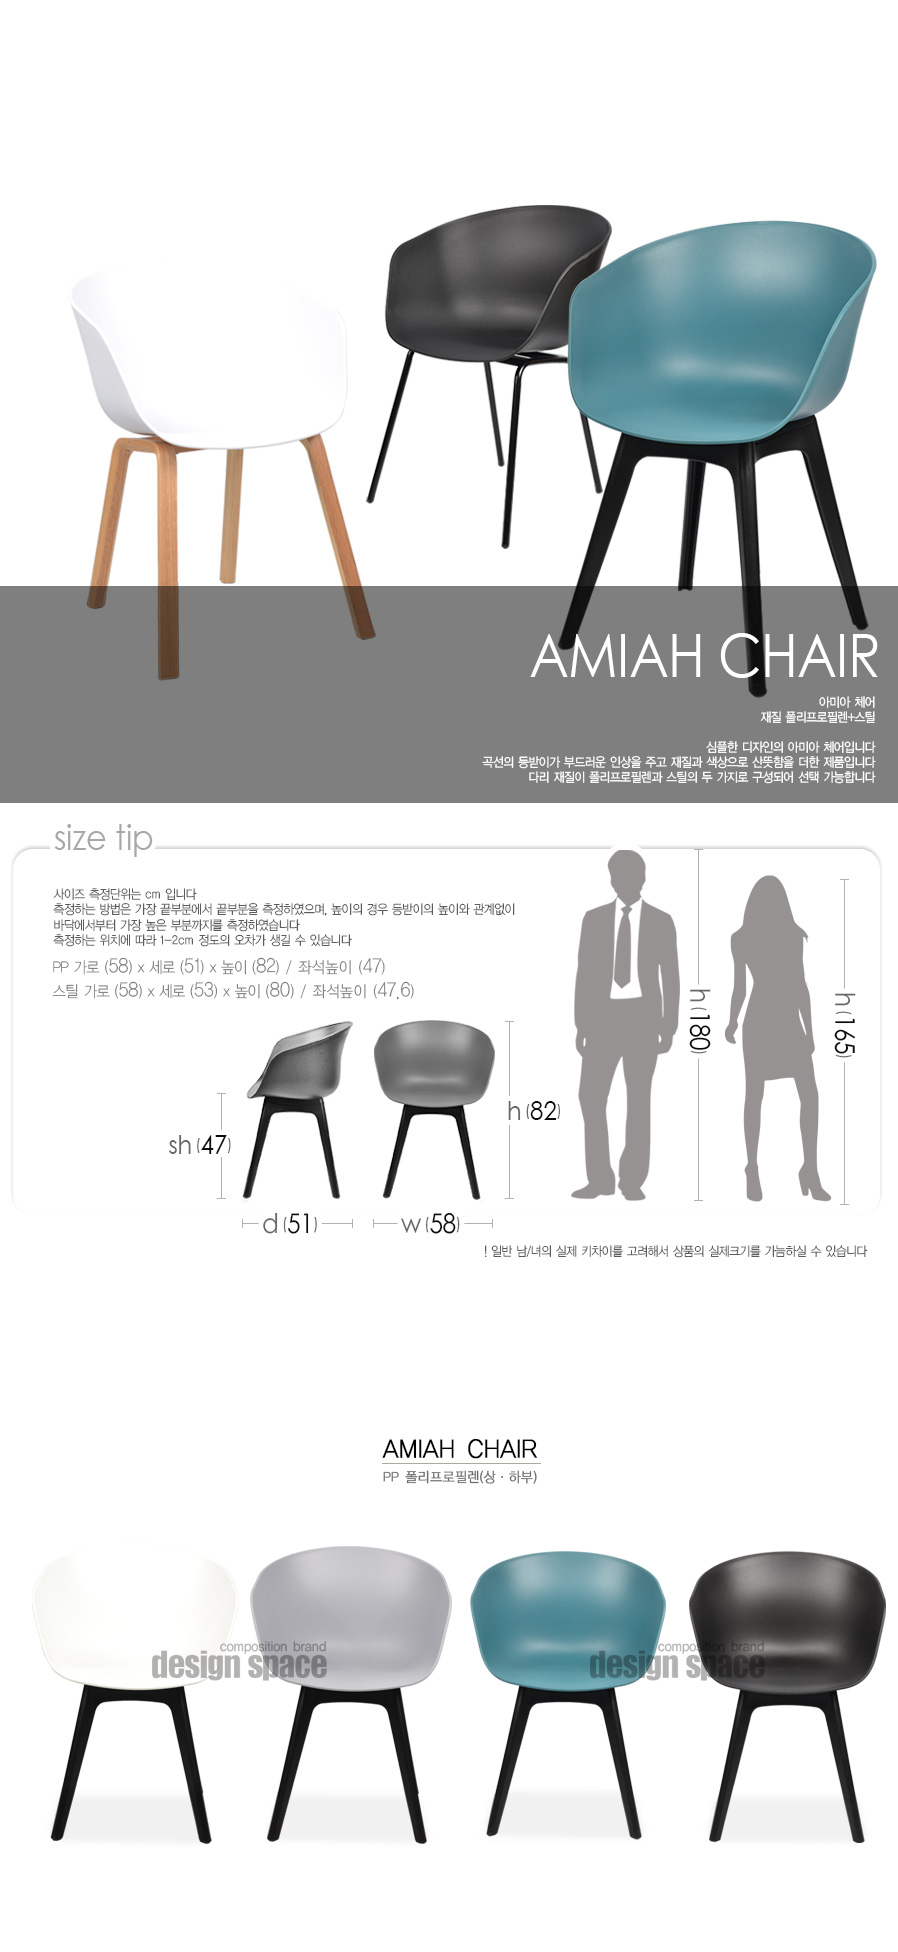 amiah-chair_01.jpg